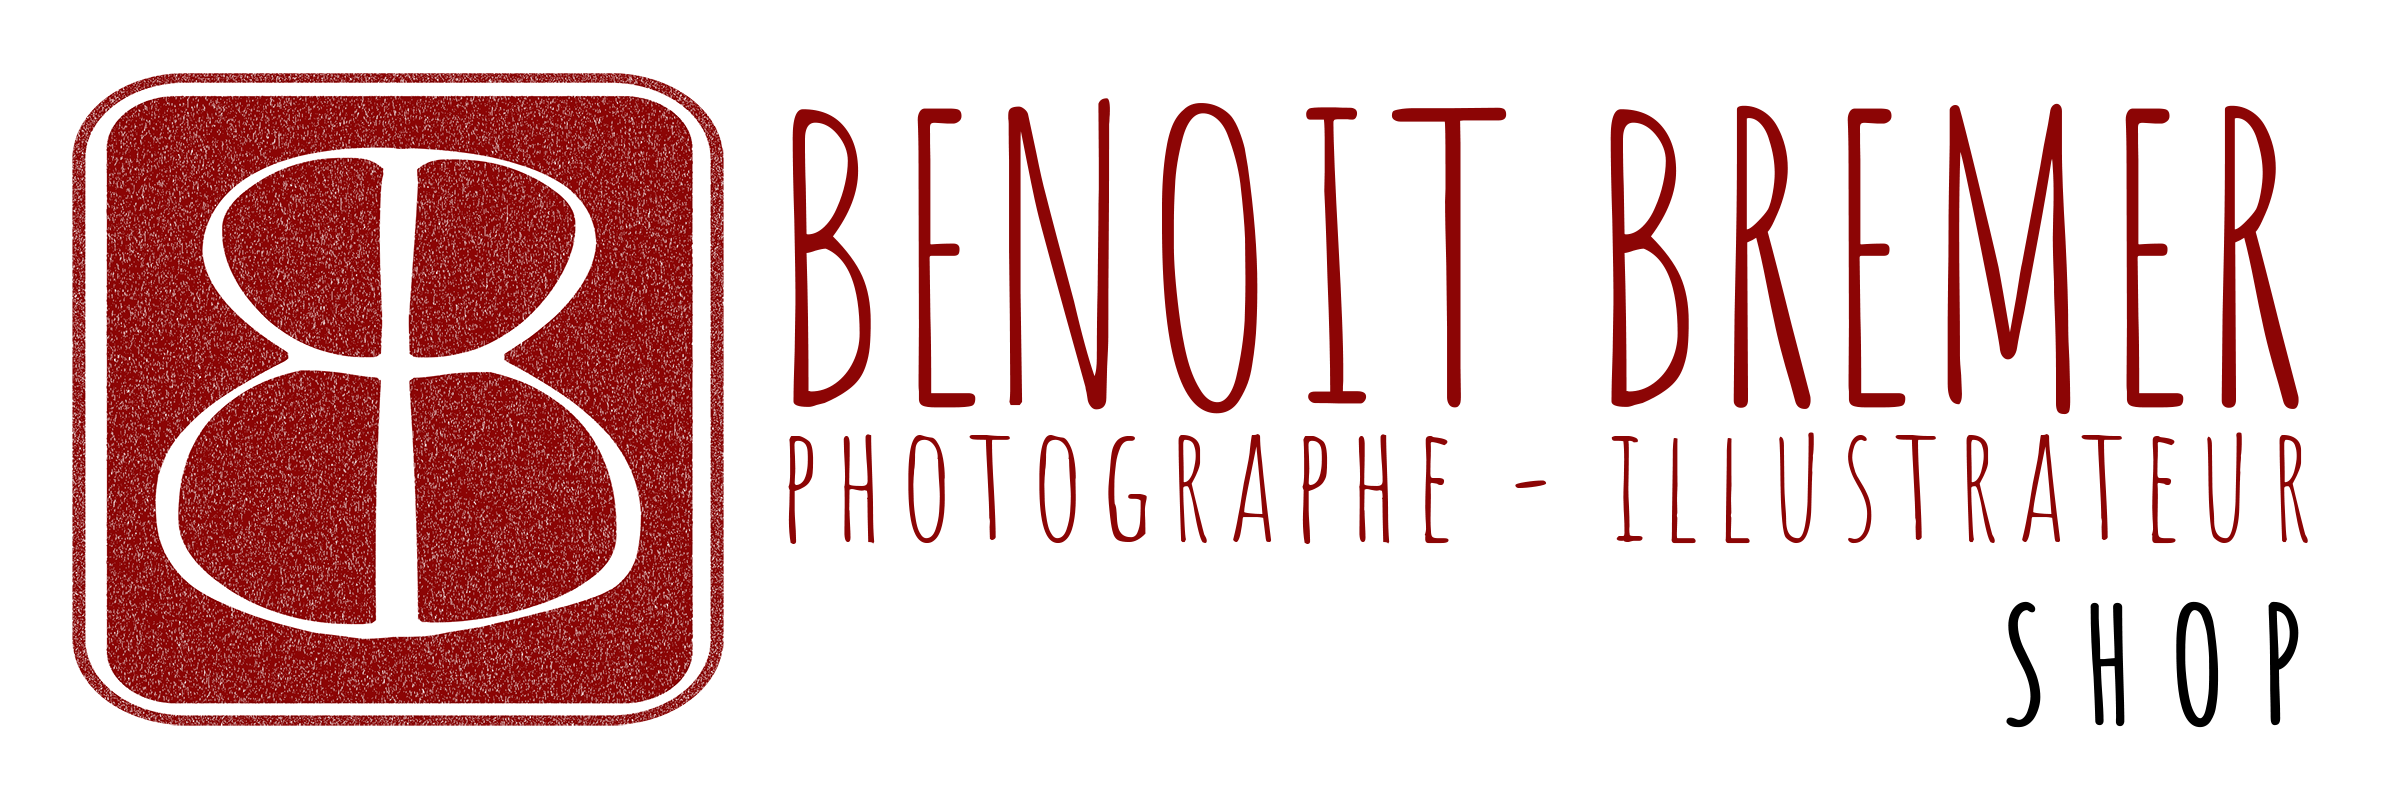 Benoit Bremer photographe - Boutique en ligne